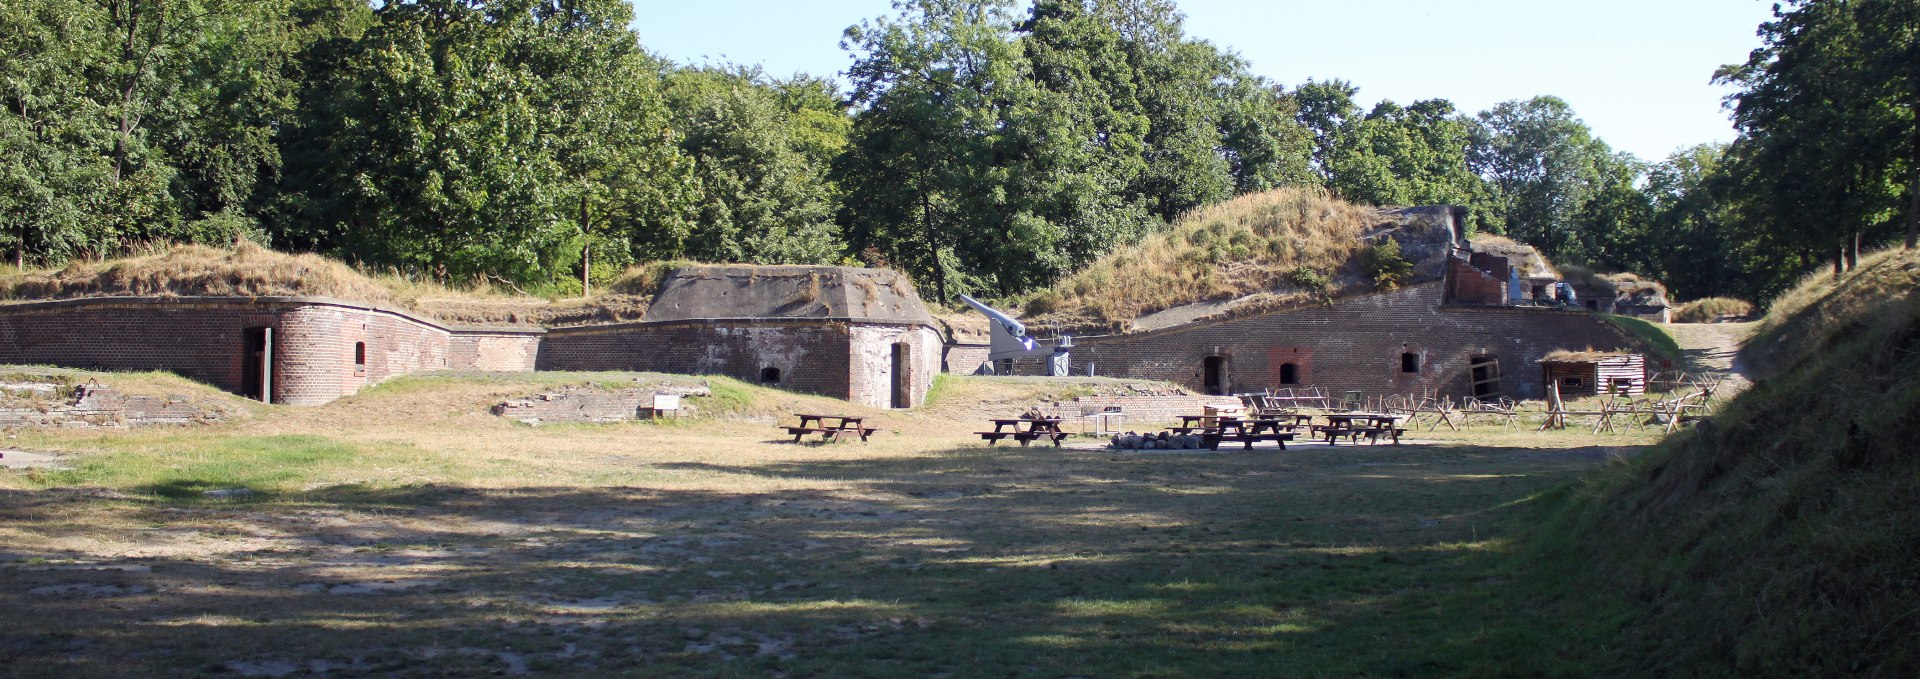 Fort Gerhard in Świnoujście, © Pomorze Zachodnie